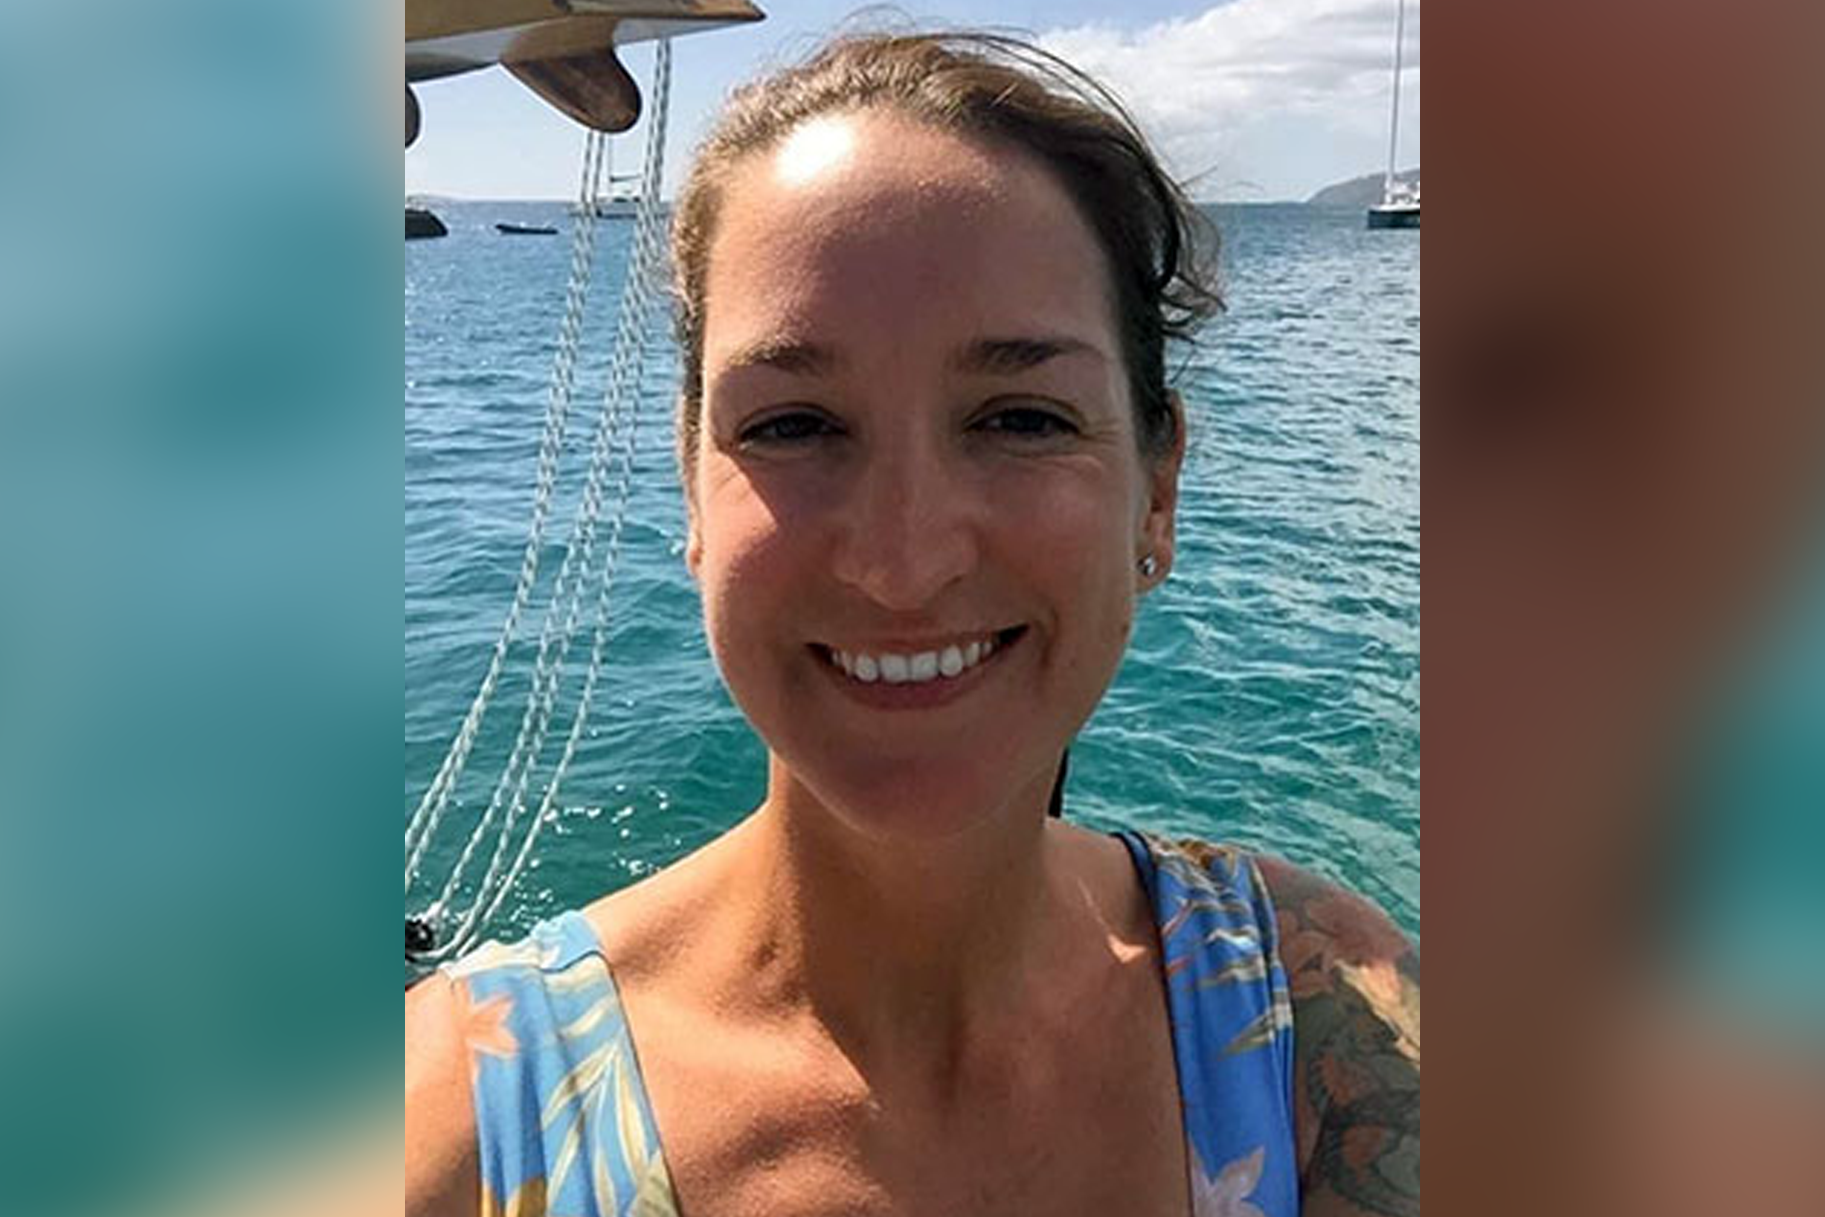 Priateľ zmiznutej ženy z Veľkej Británie, ktorý zmizol z člna na Panenských ostrovoch, bol predtým zatknutý za domáce zneužívanie